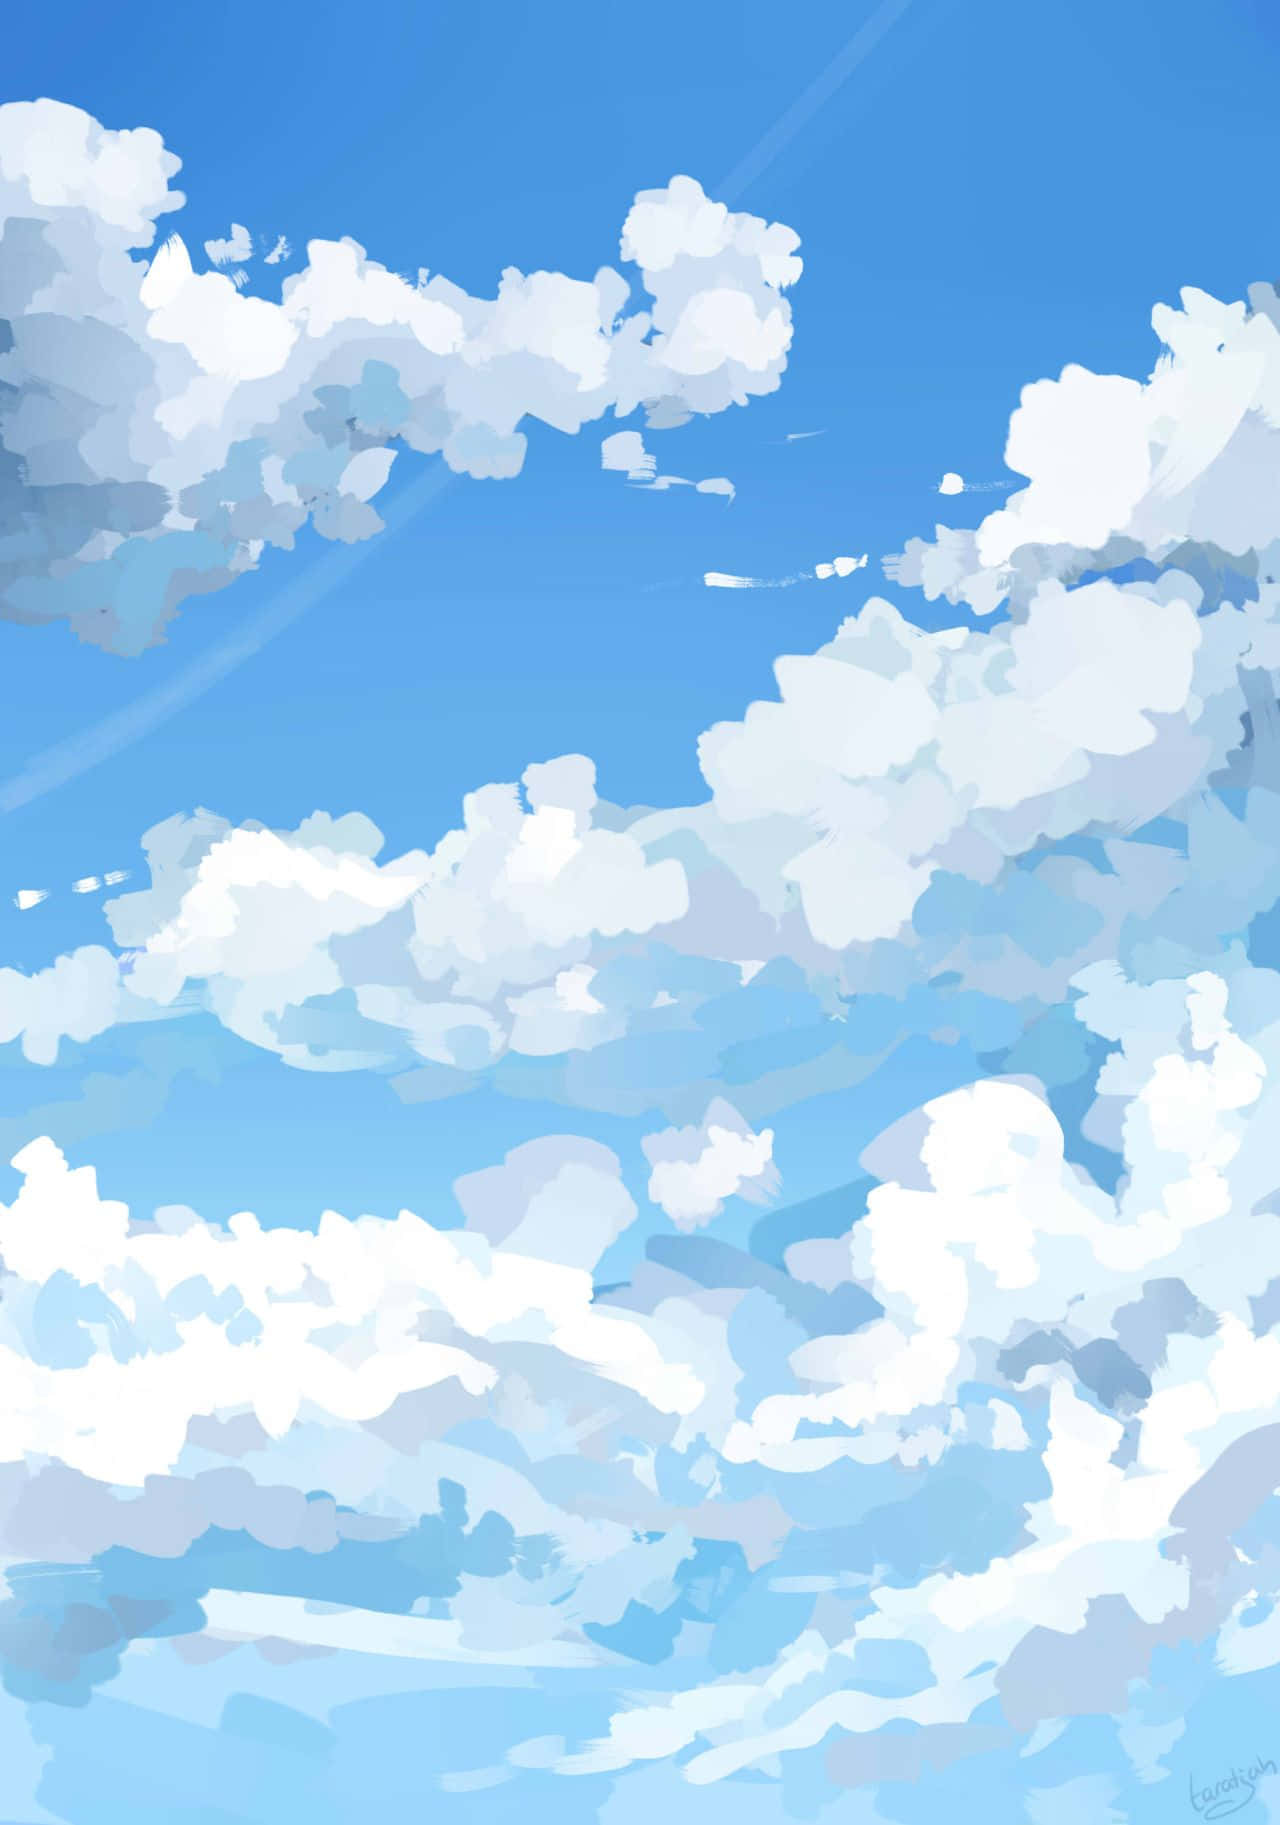 Pinturarealista De Nubes En Un Estético Azul Claro Fondo de pantalla